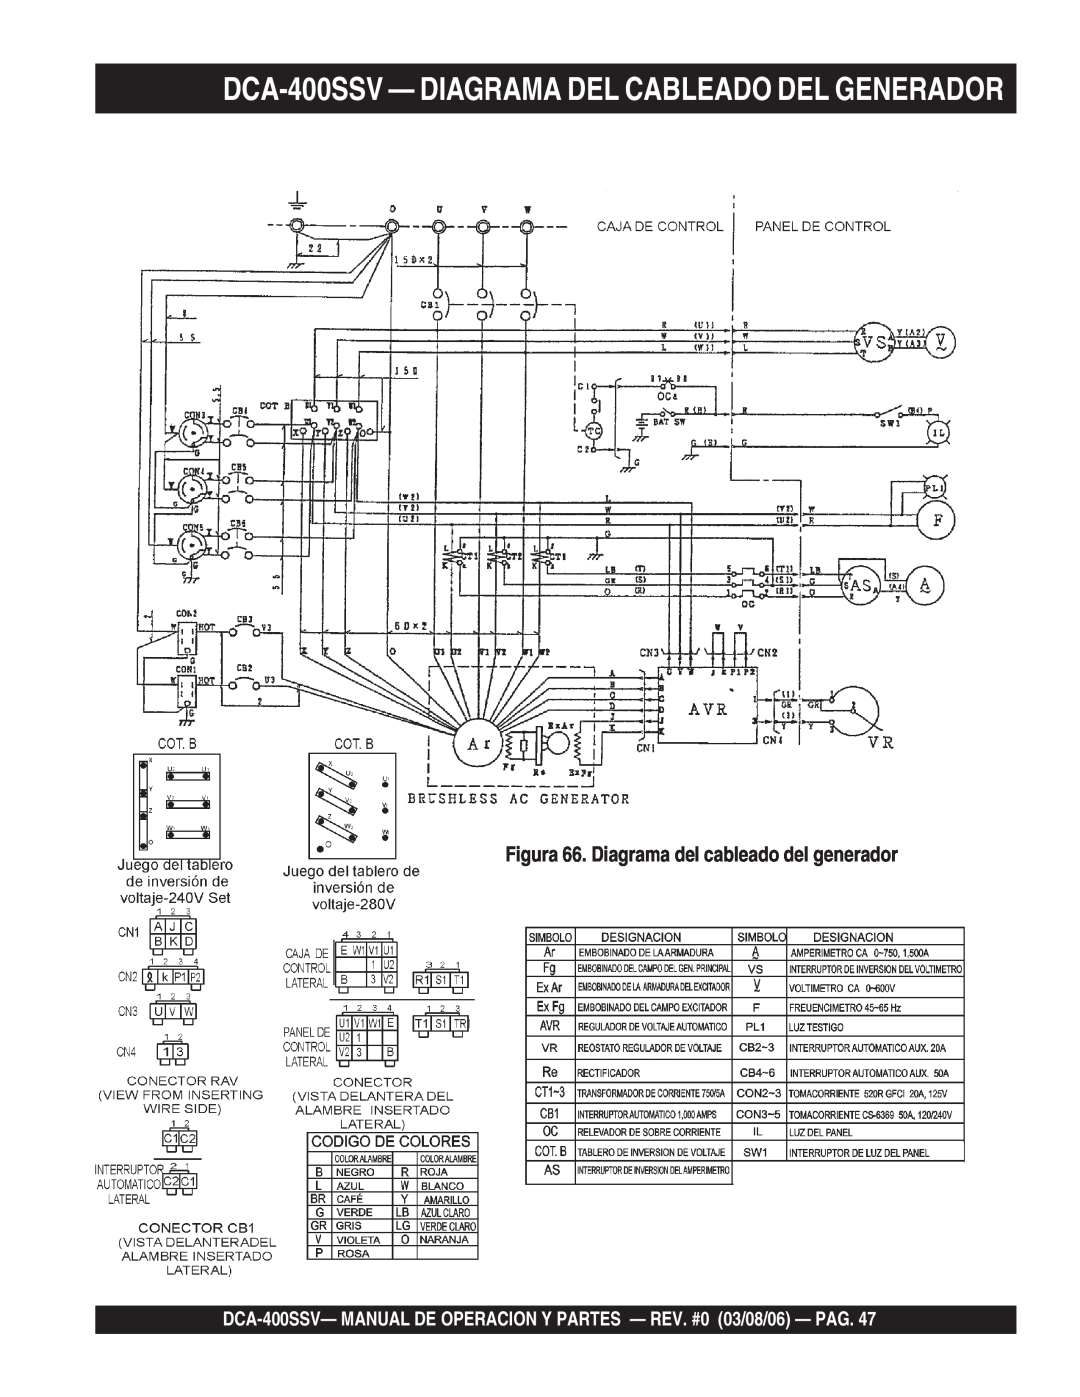 Multiquip DCA-400SSV— DIAGRAMA DEL CABLEADO DEL GENERADOR, Figura 66. Diagrama del cableado del generador 